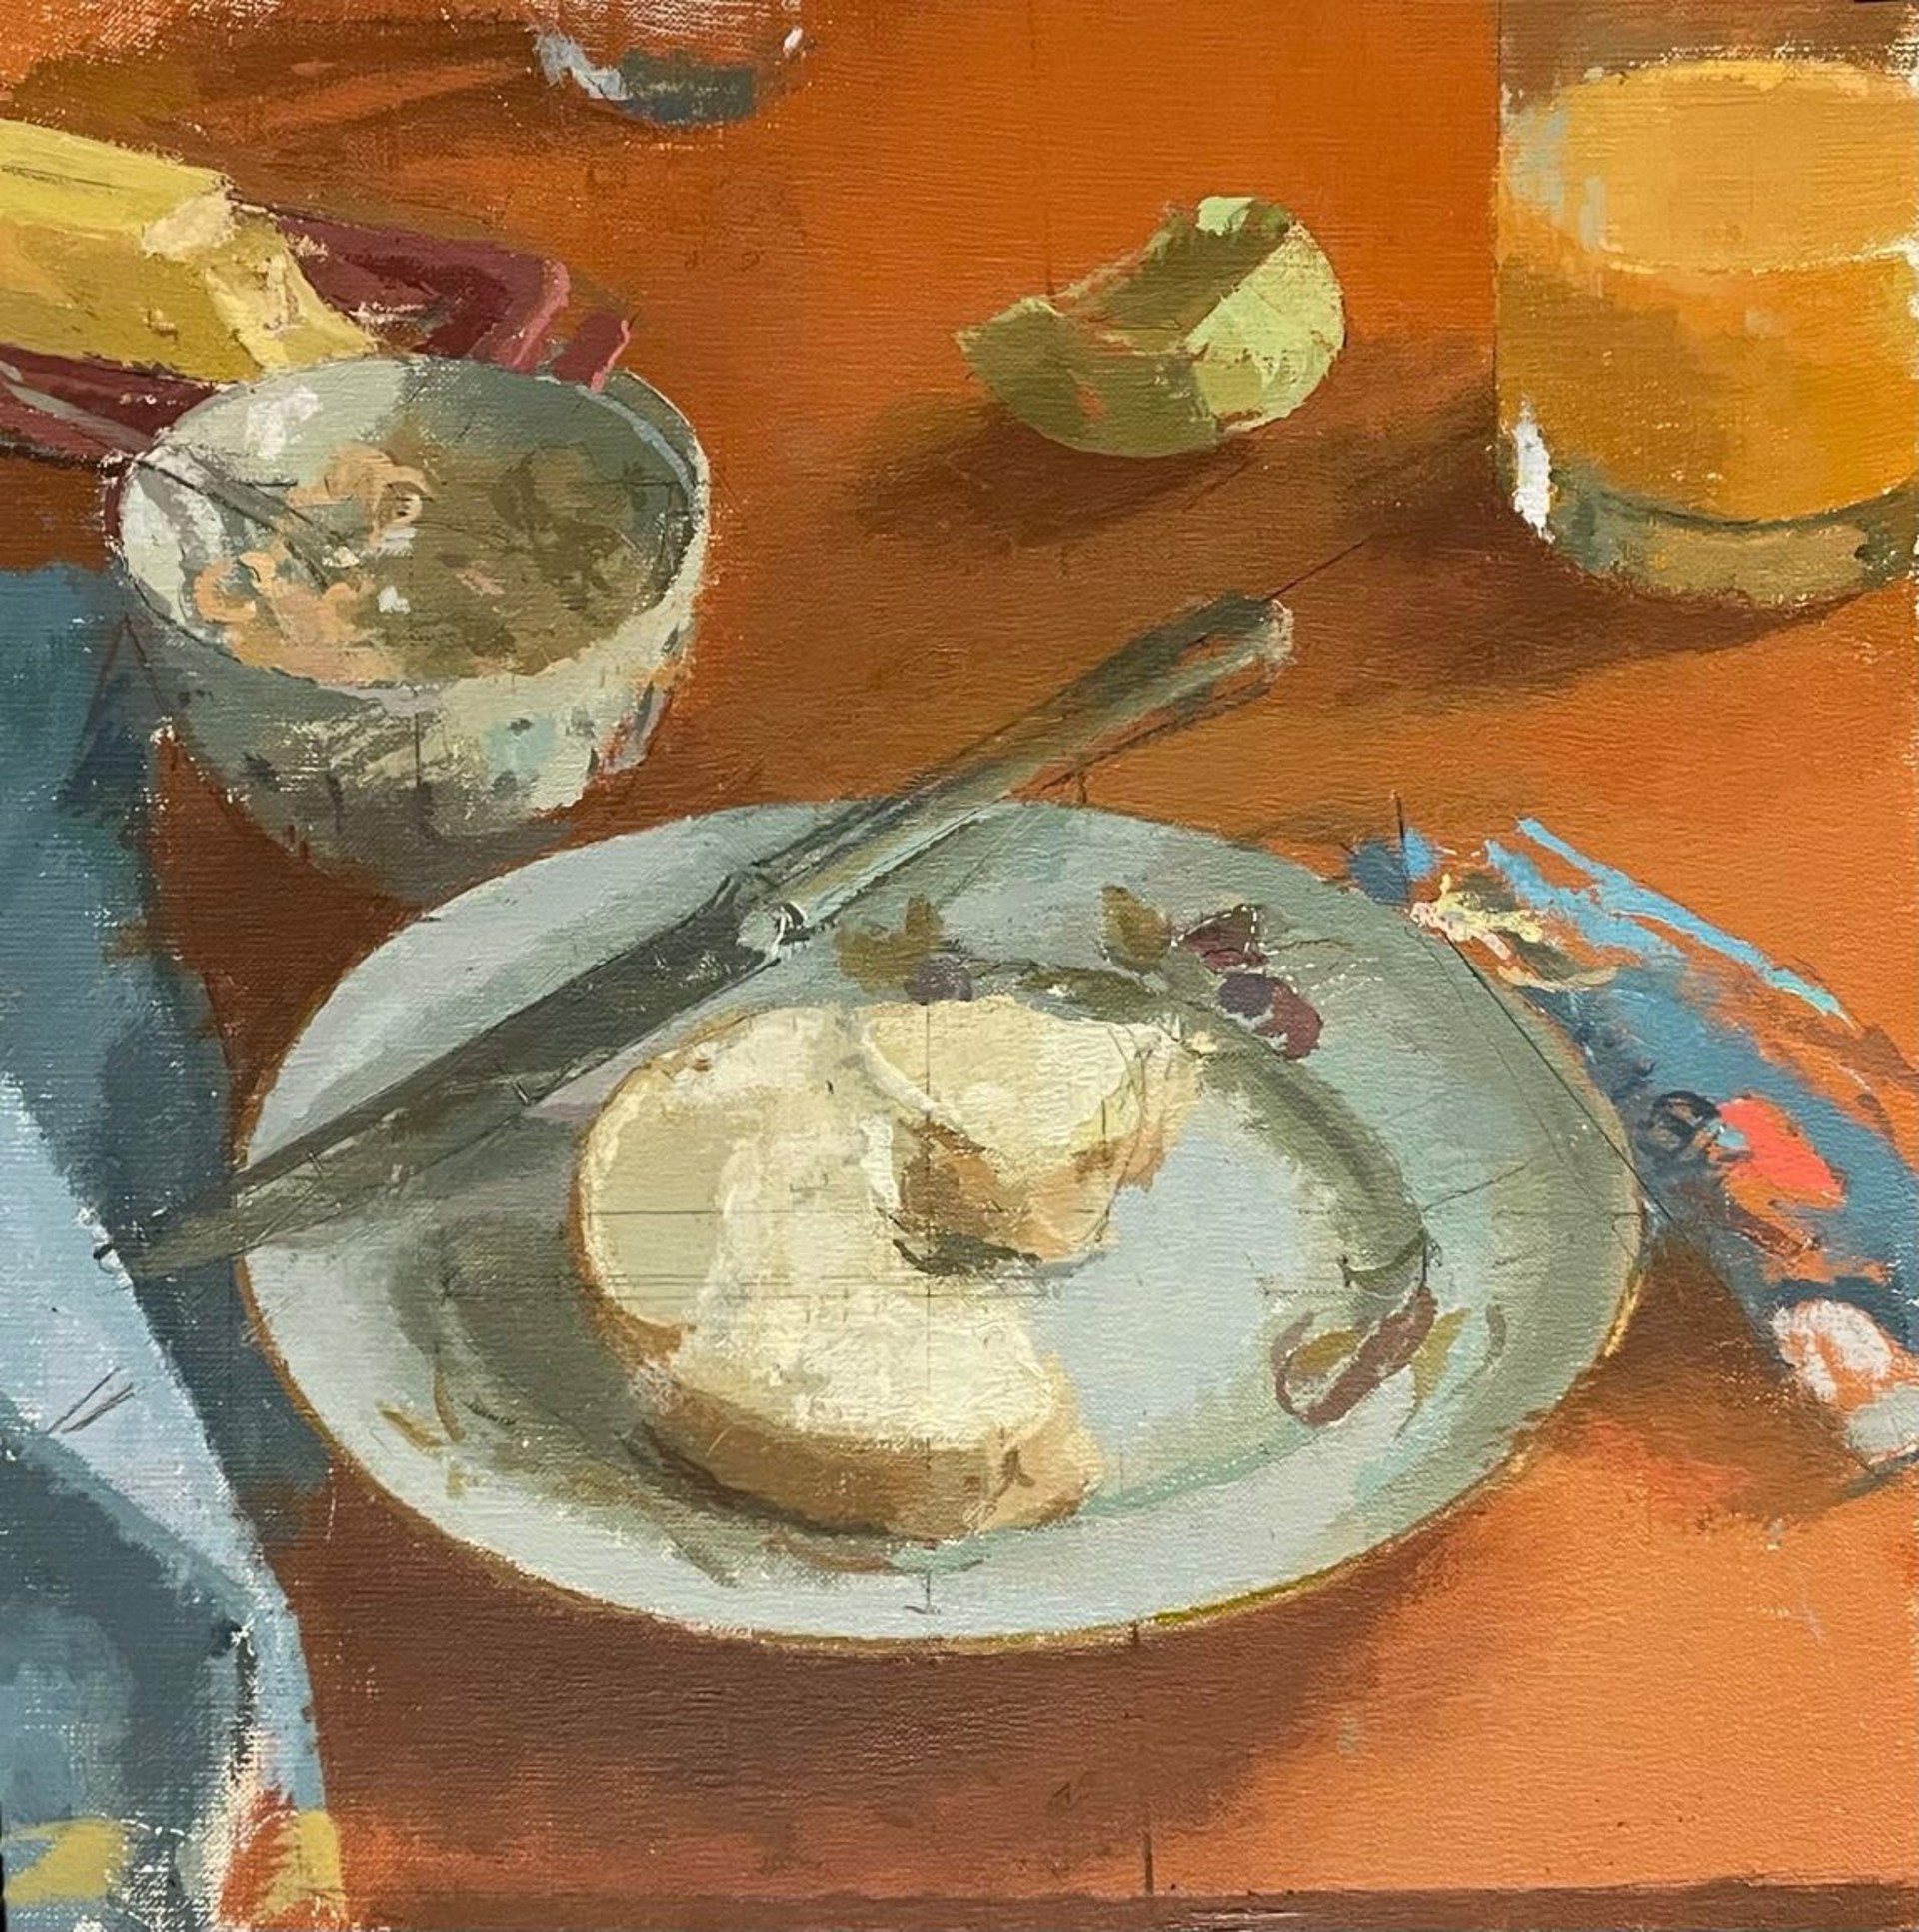 Sam's Breakfast by Peter Van Dyck